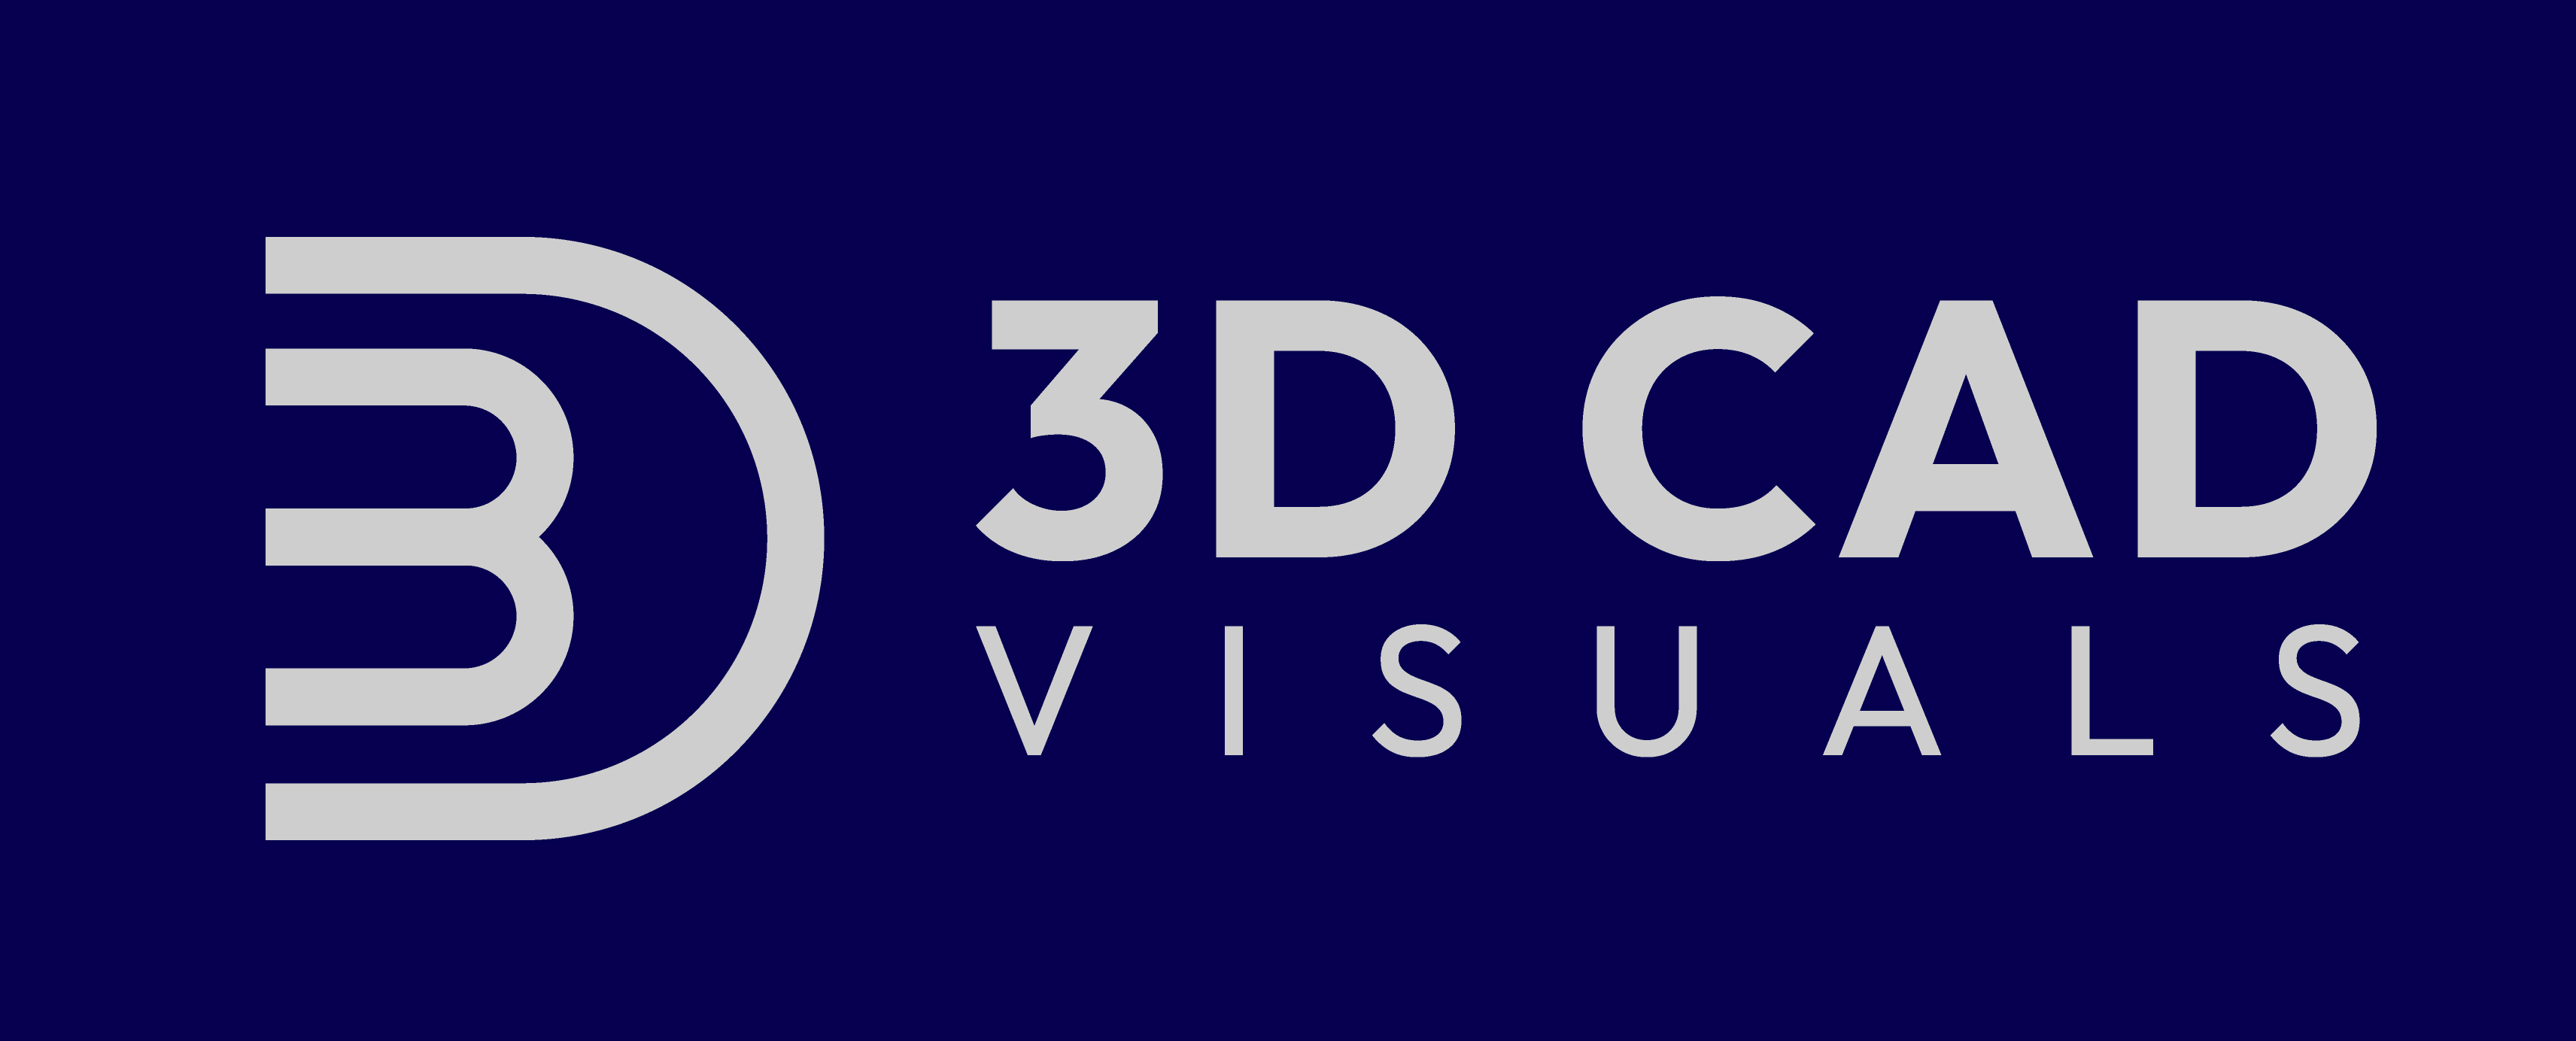 3D CAD VISUALS | HIGH QUALITY CGI STUDIO